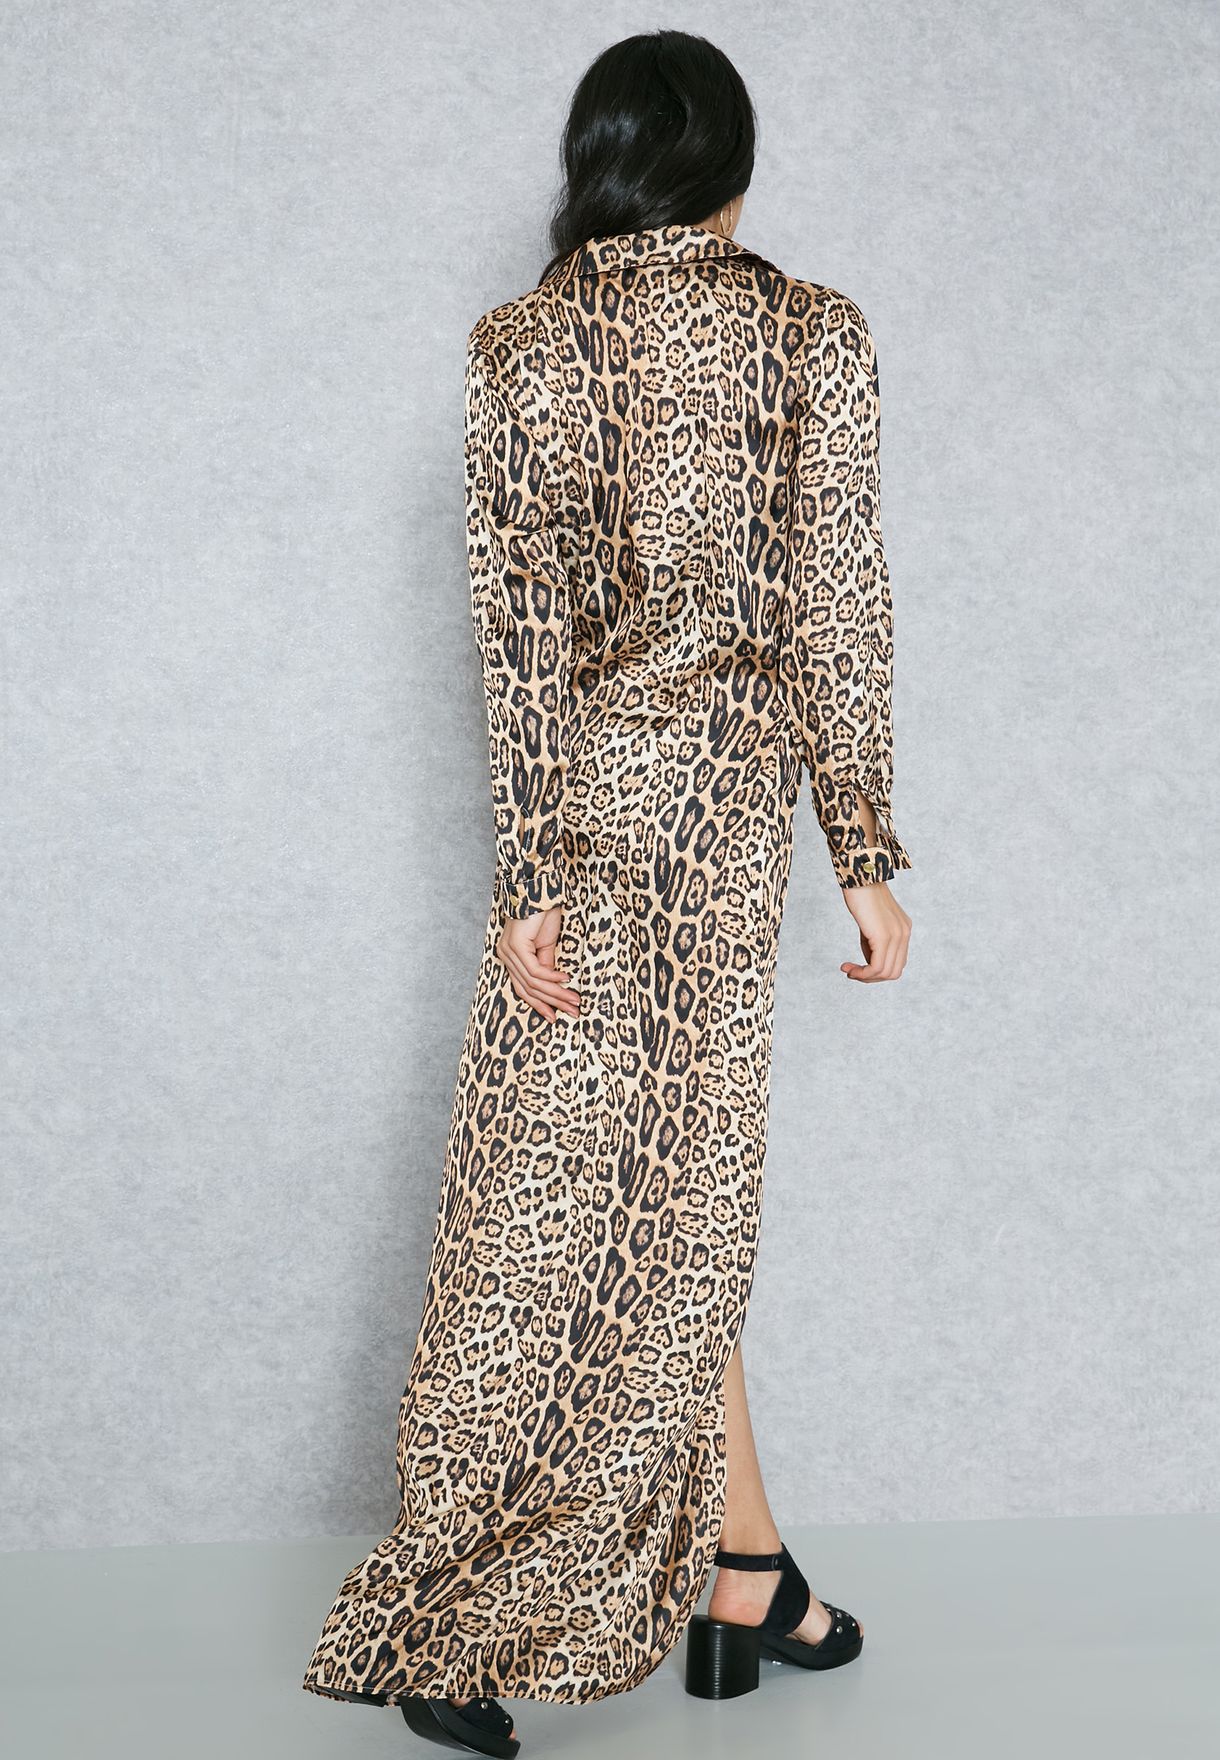 2 in 1 leopard print plunge dress